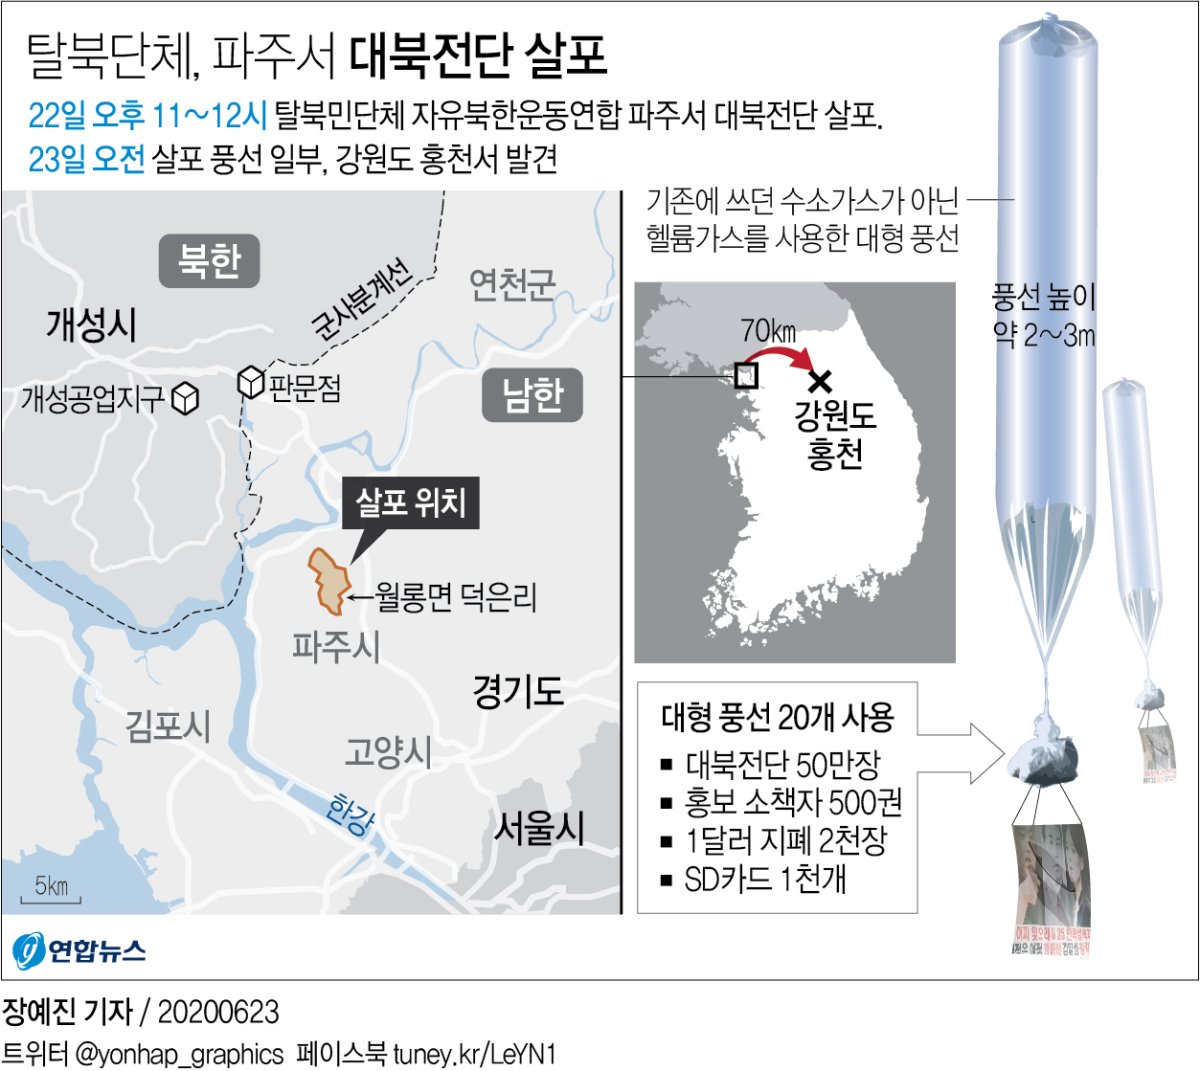 (جديد) مجموعة من المنشقين الكوريين الشماليين تقول إنها أرسلت منشورات إلى الشمال بين عشية وضحاها - 2